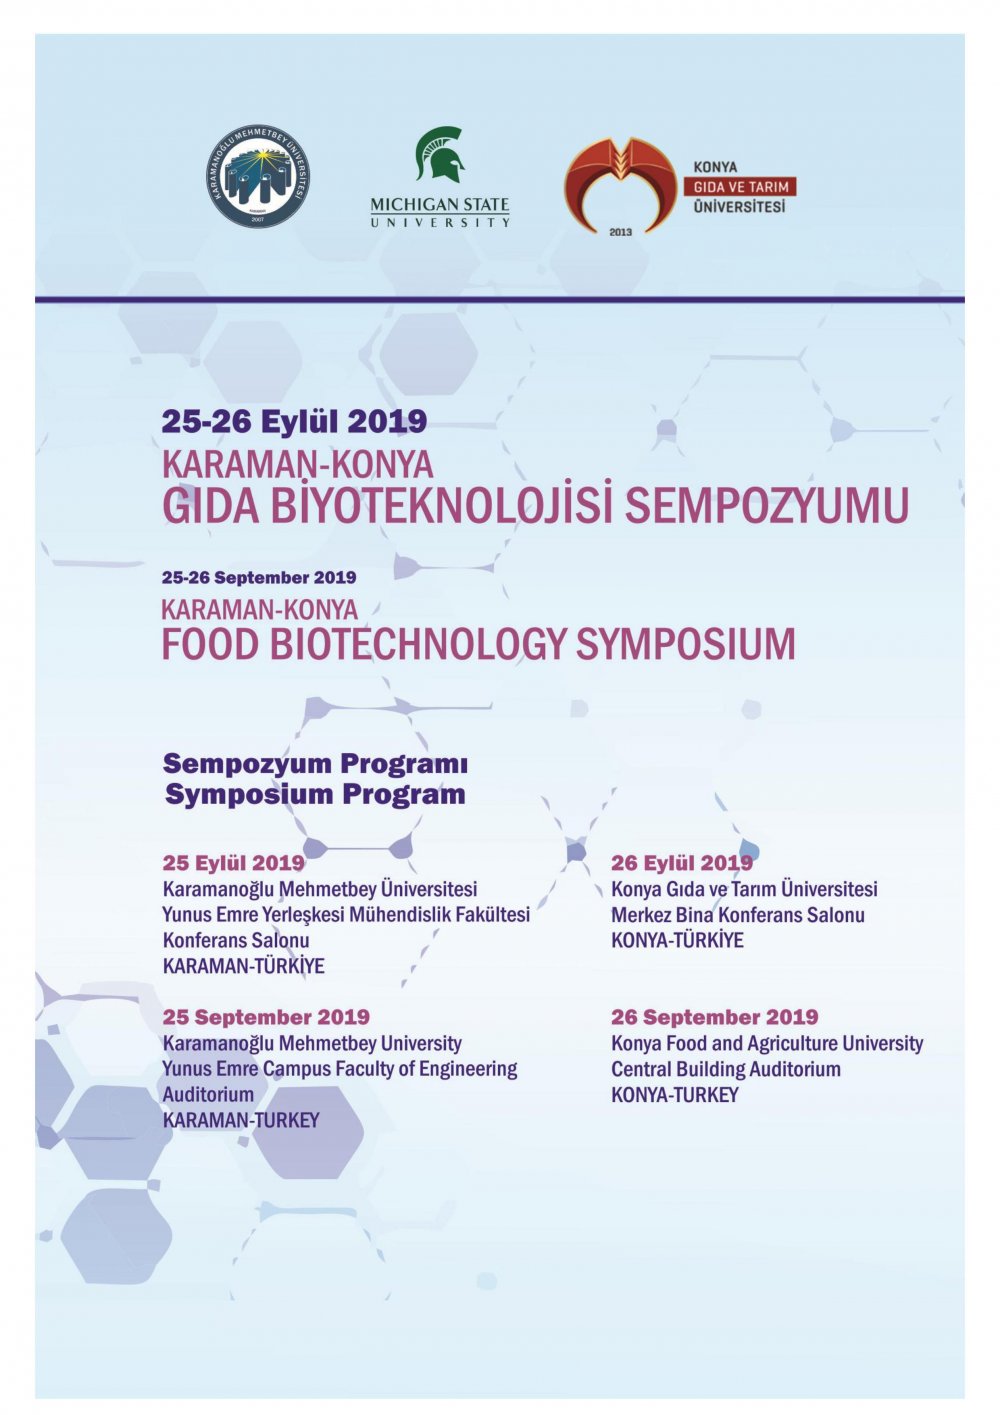 Karaman-Konya Gıda Biyoteknolojisi Sempozyumu / 25-26 Eylül 2019